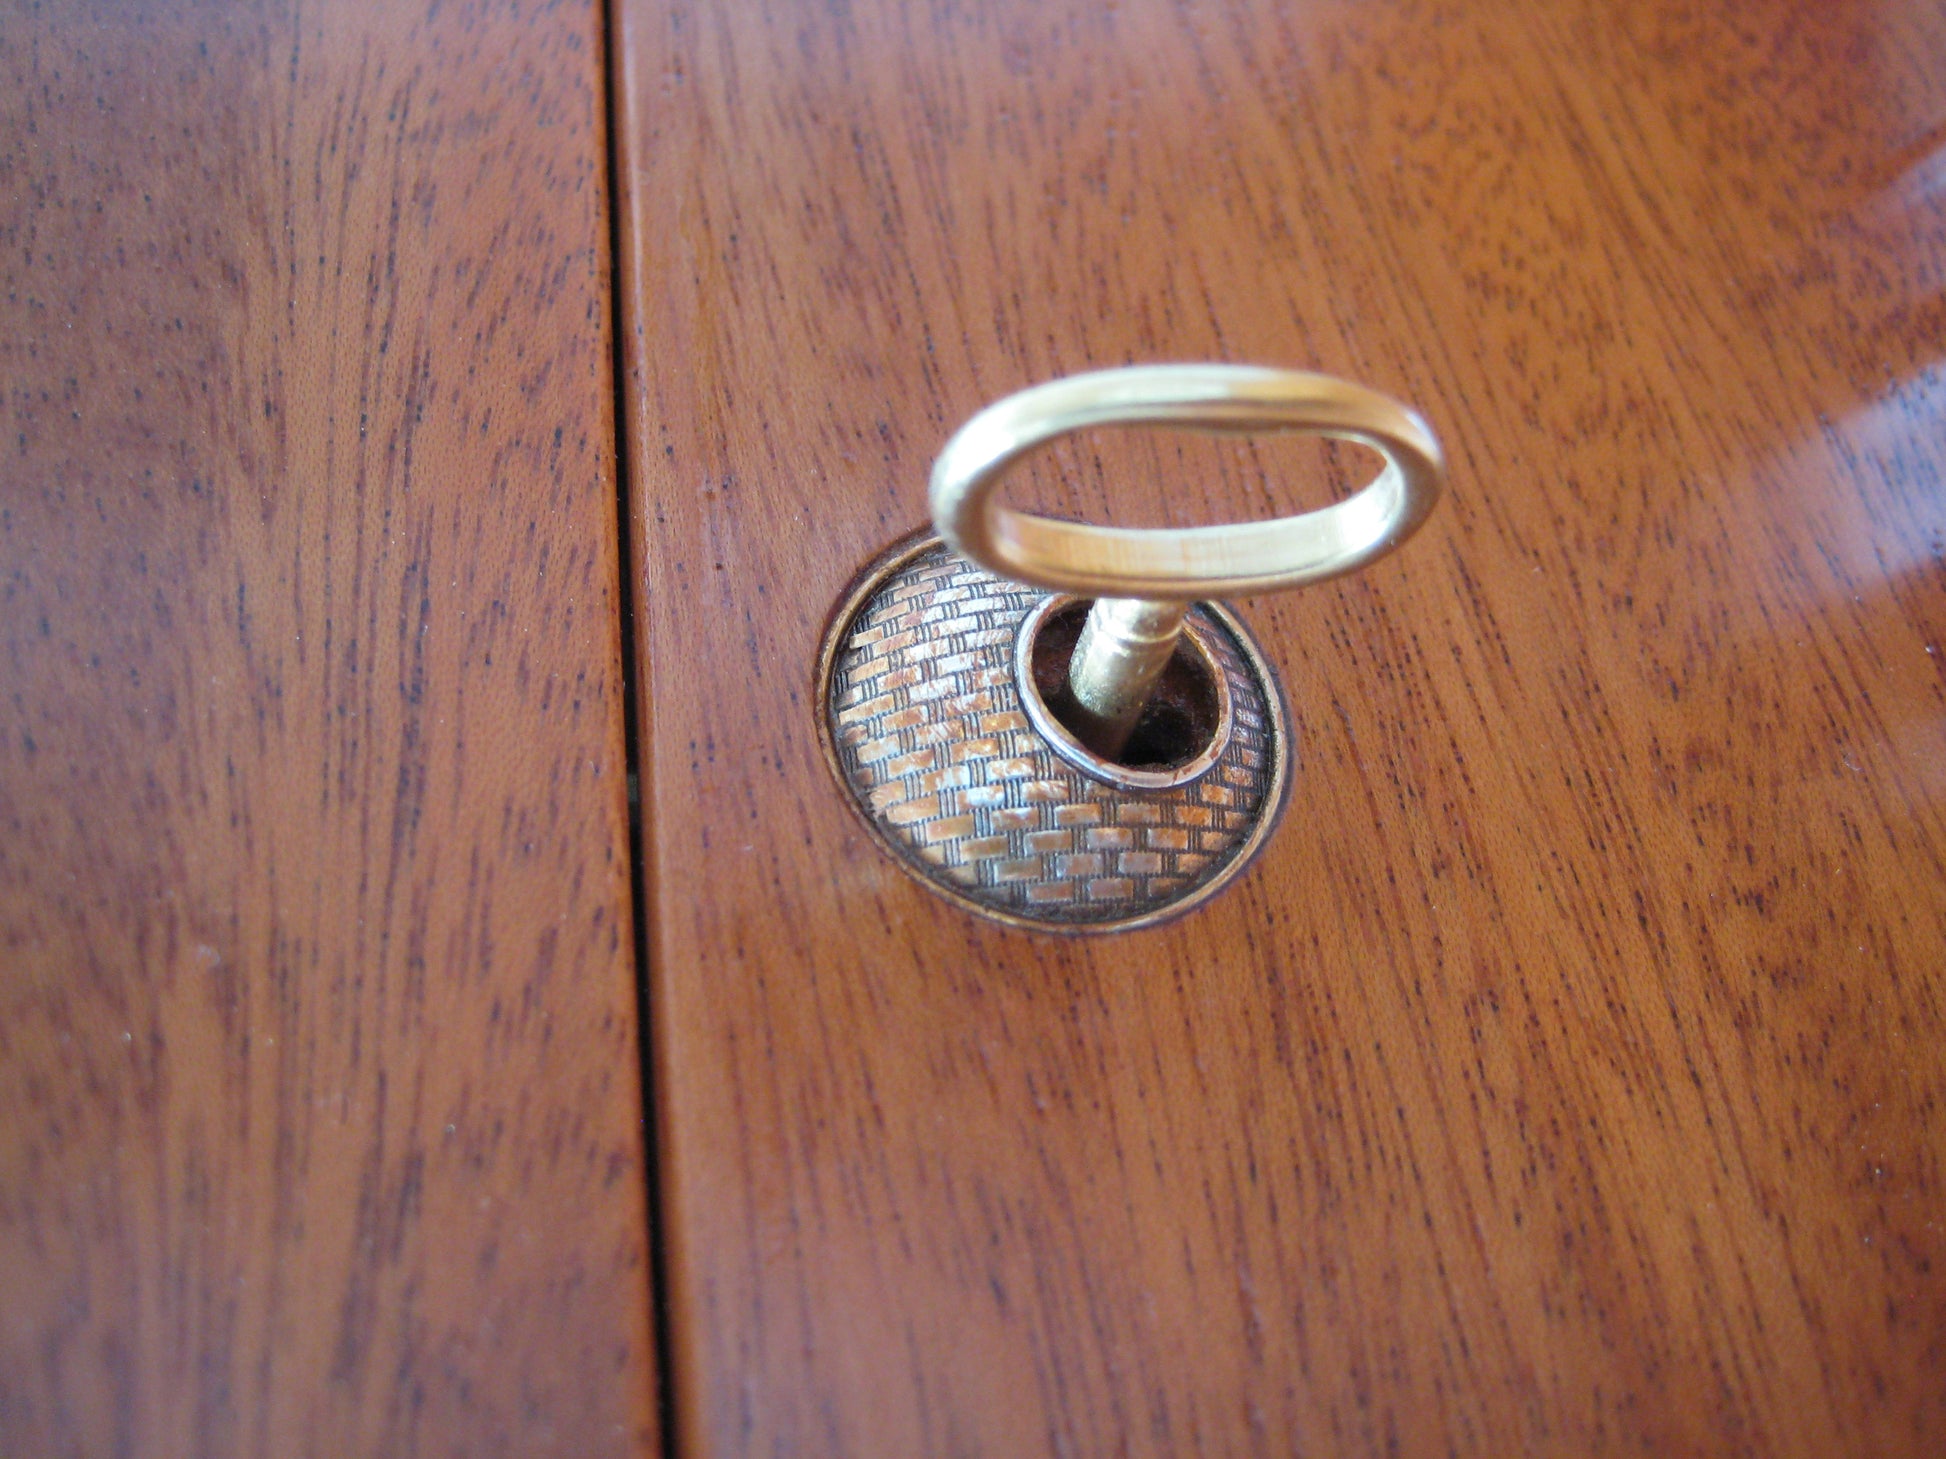 Jewelry box key detail